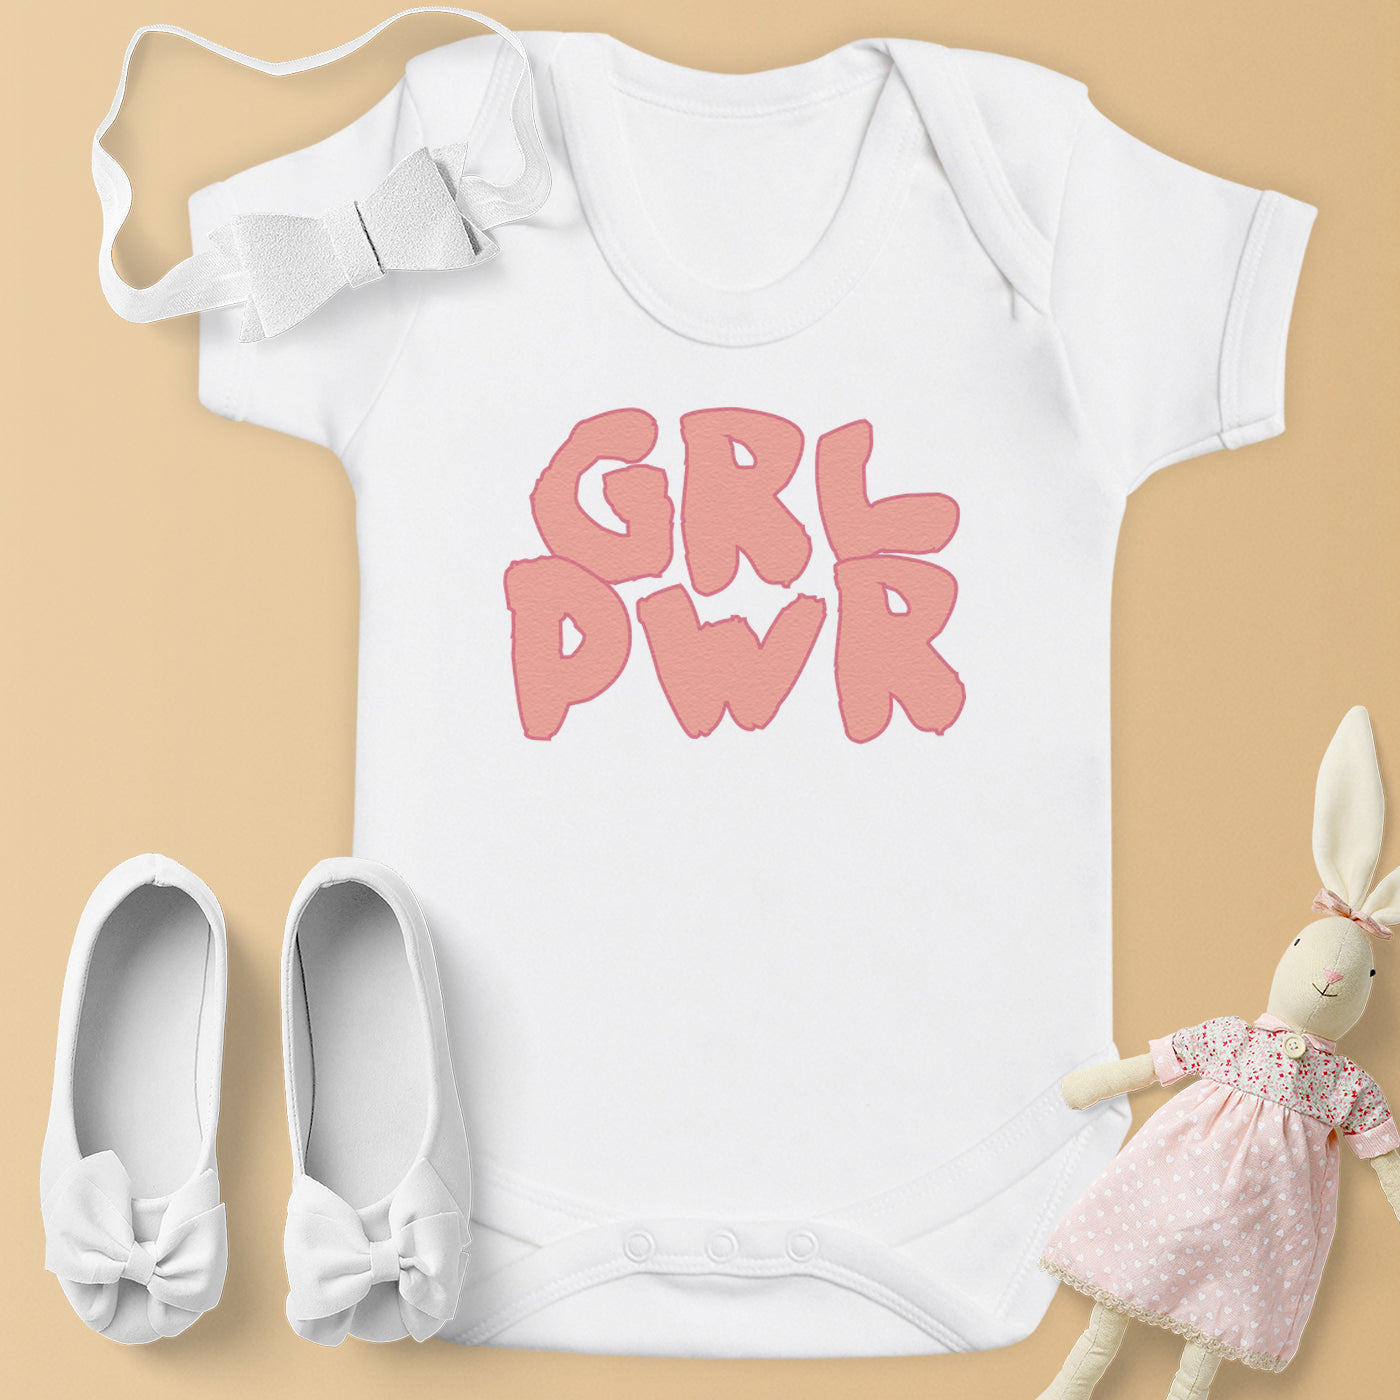 GRL PWR - Baby Bodysuit